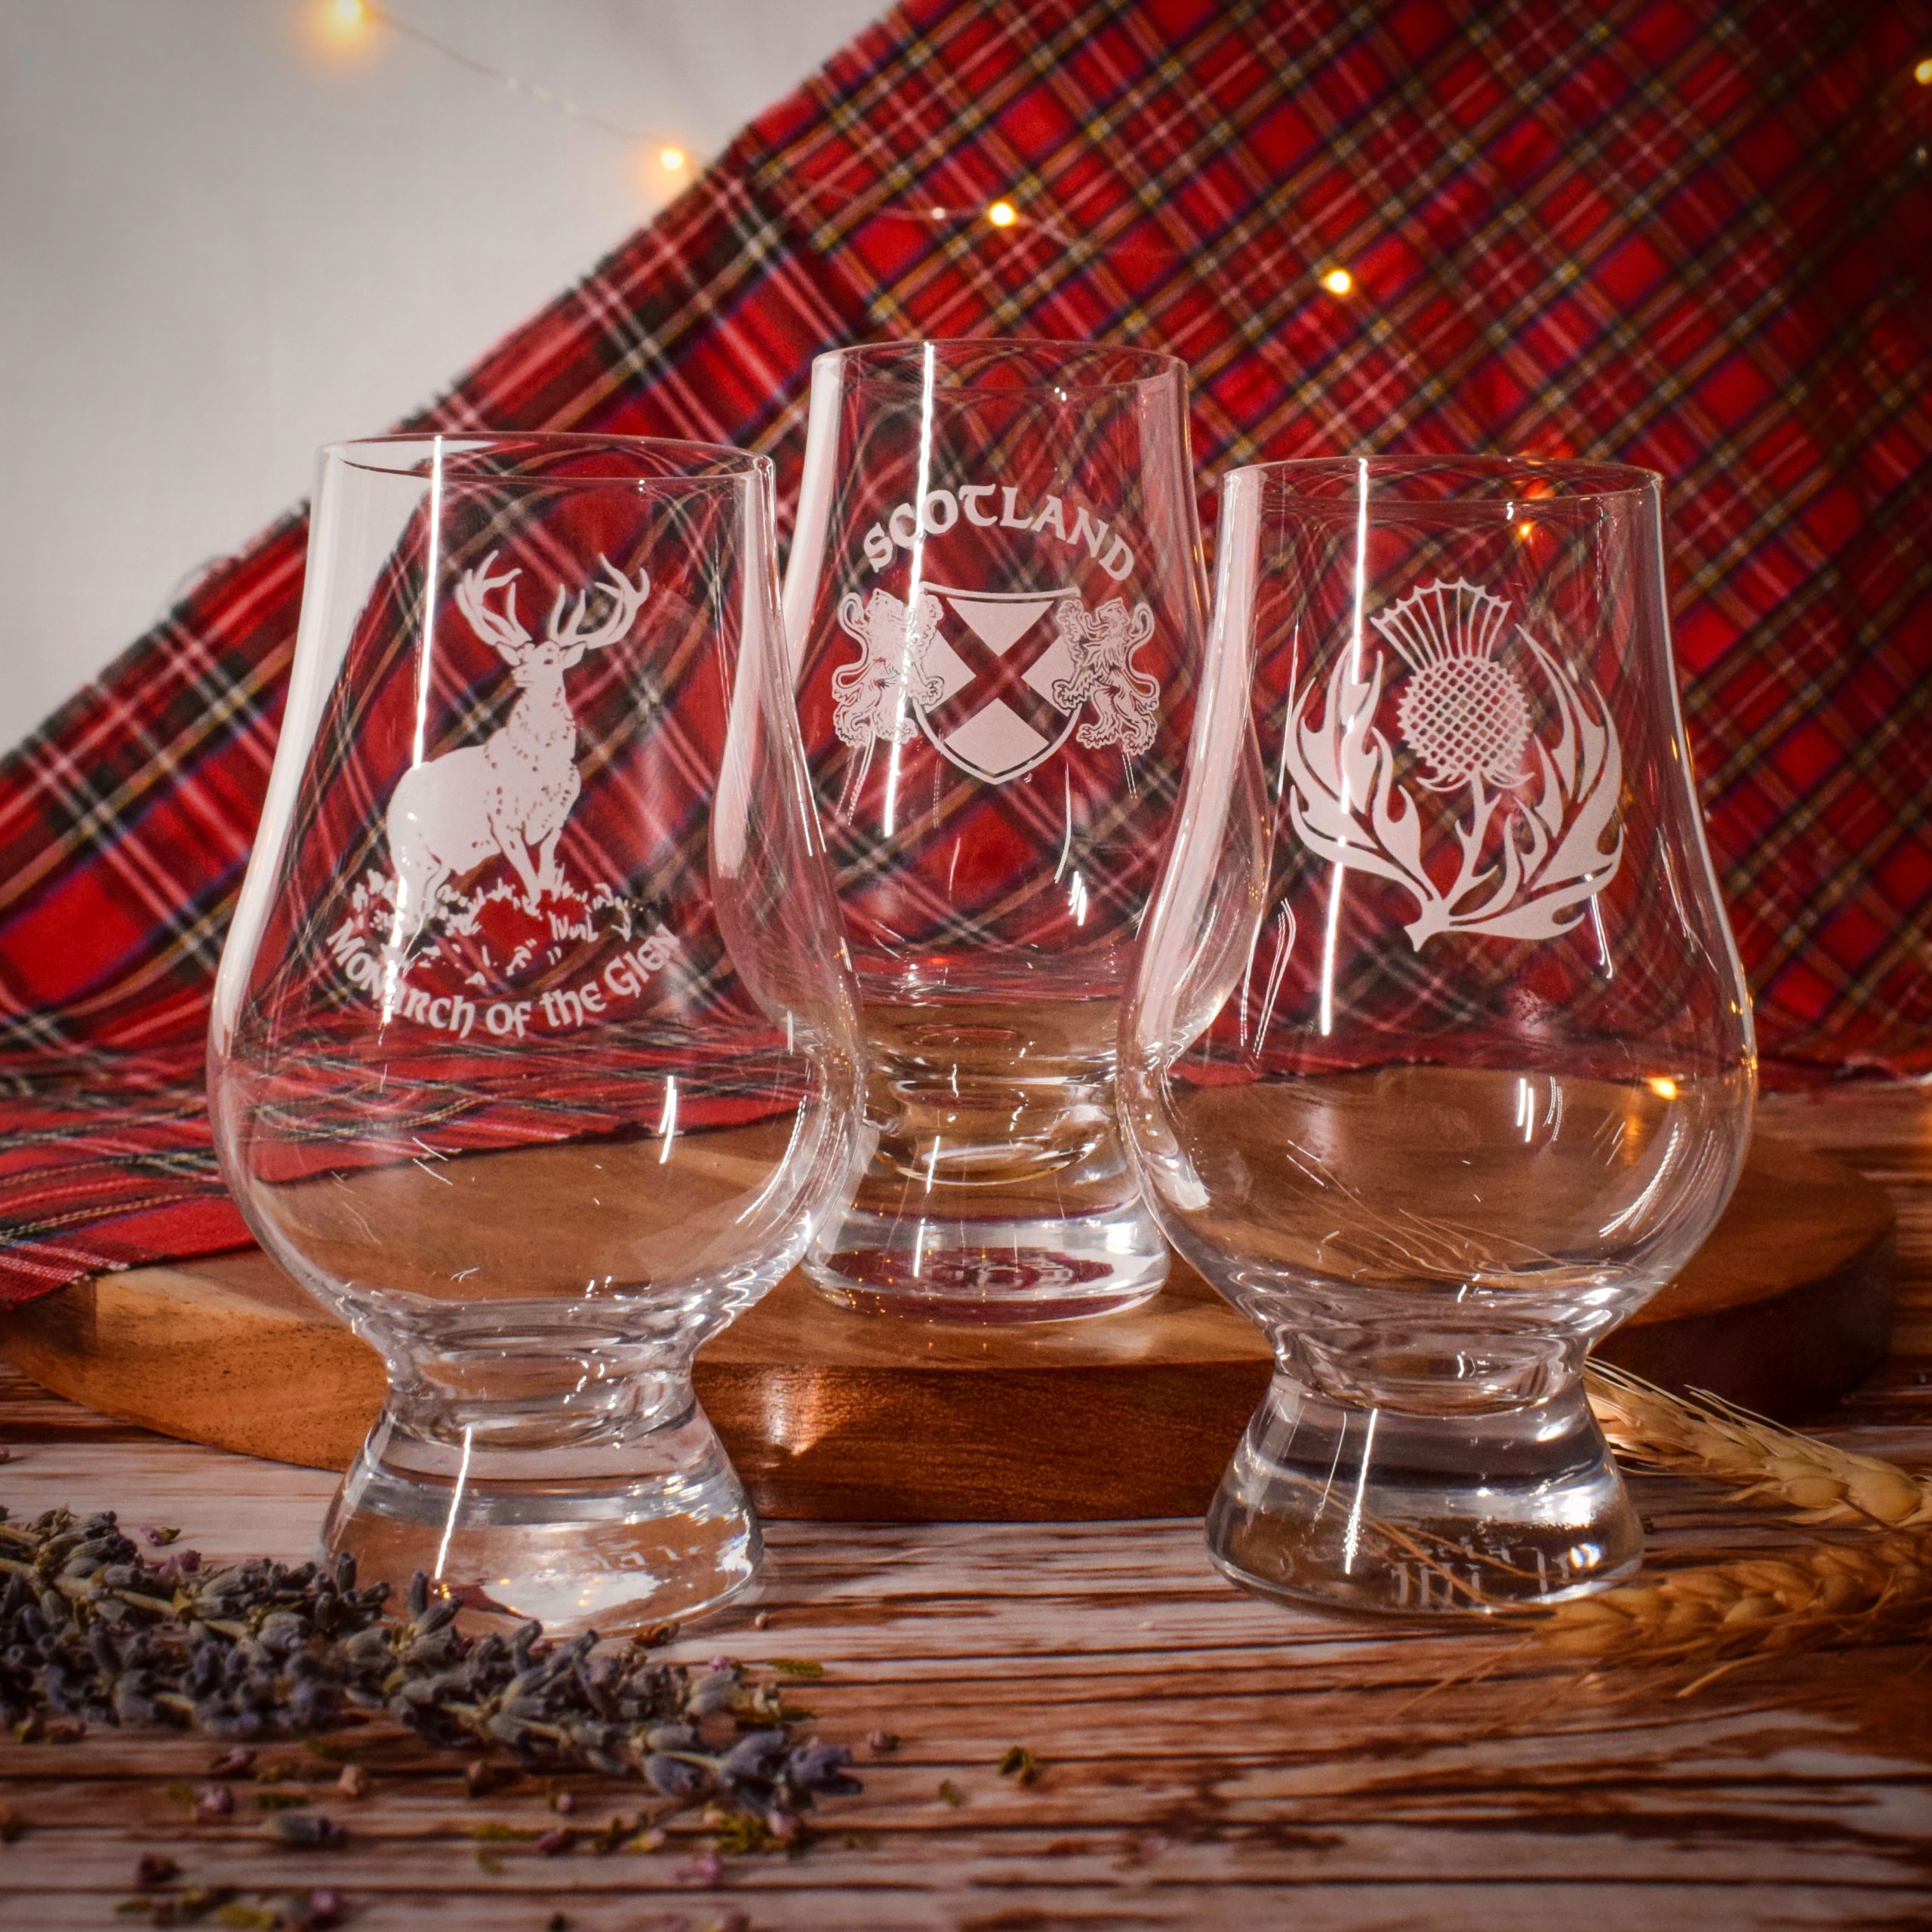 Burns Scottish Gift Glencairn Glass Engraved Carton